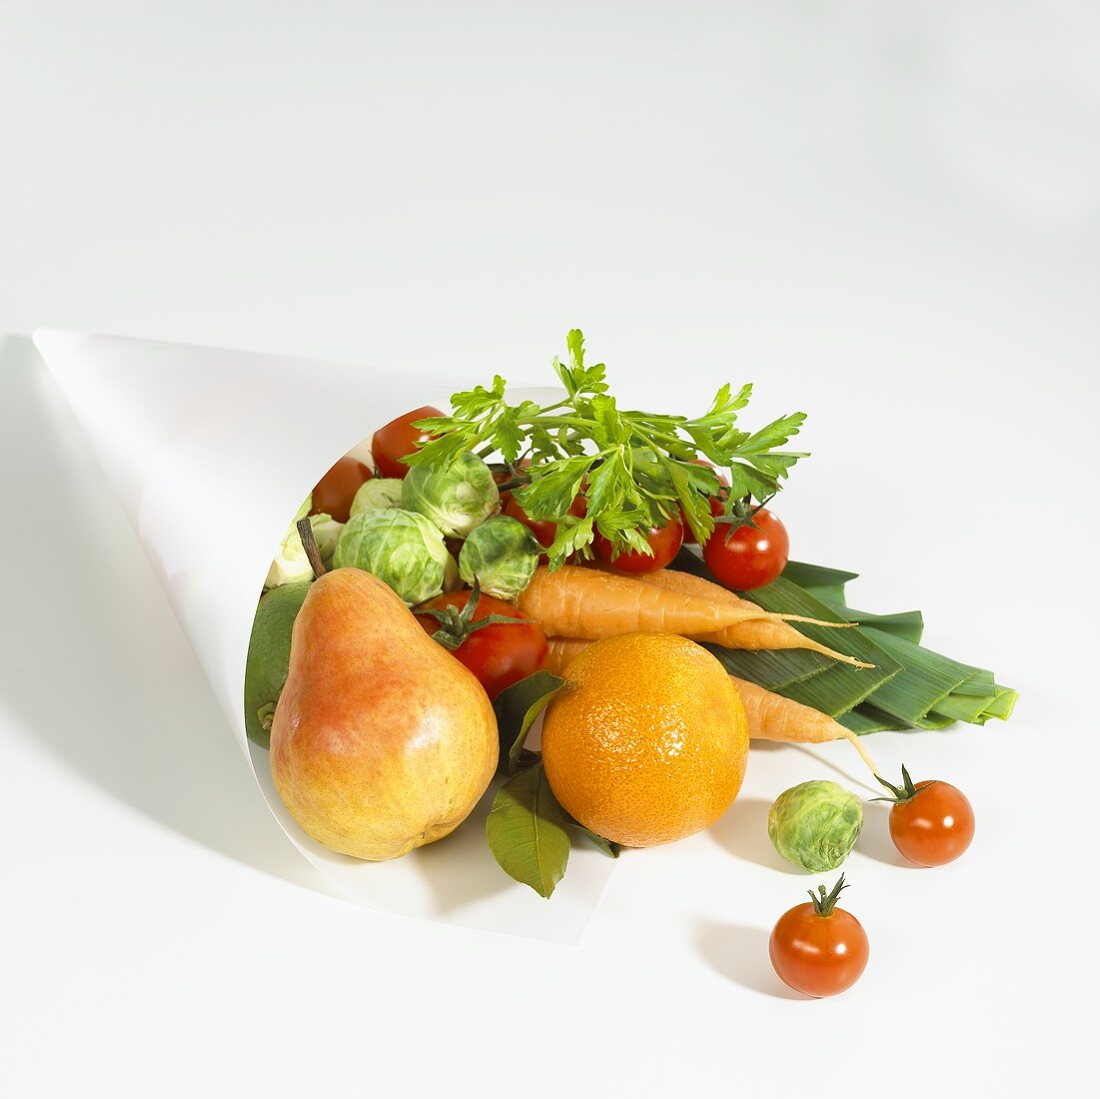 Verschiedene Obst- und Gemüsesorten in Papiertüte